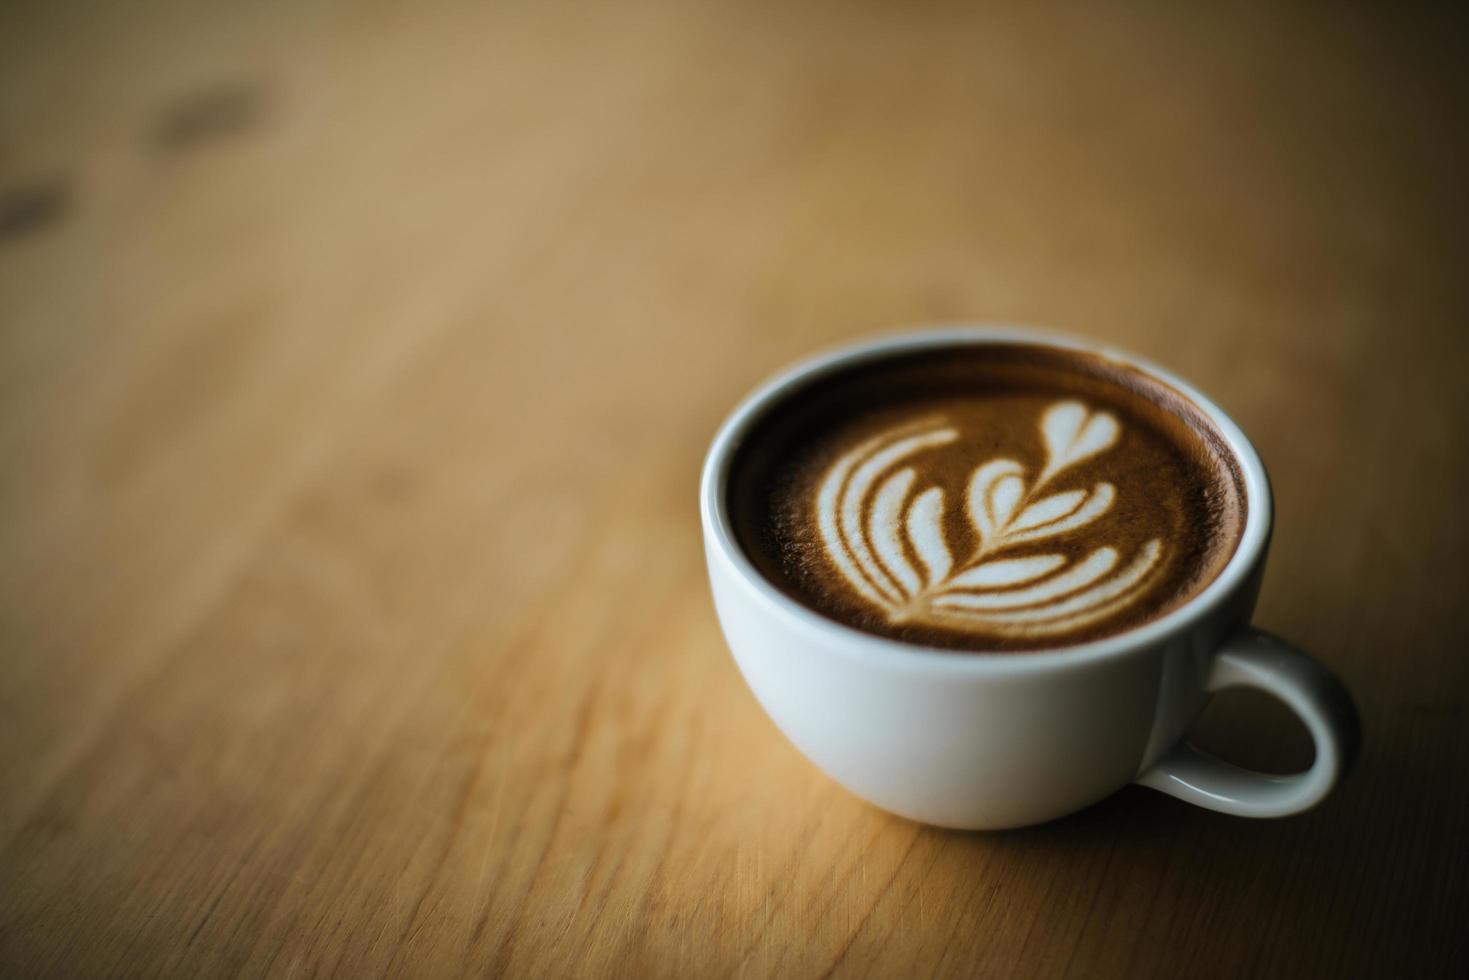 latte art dans une tasse à café sur la table du café photo